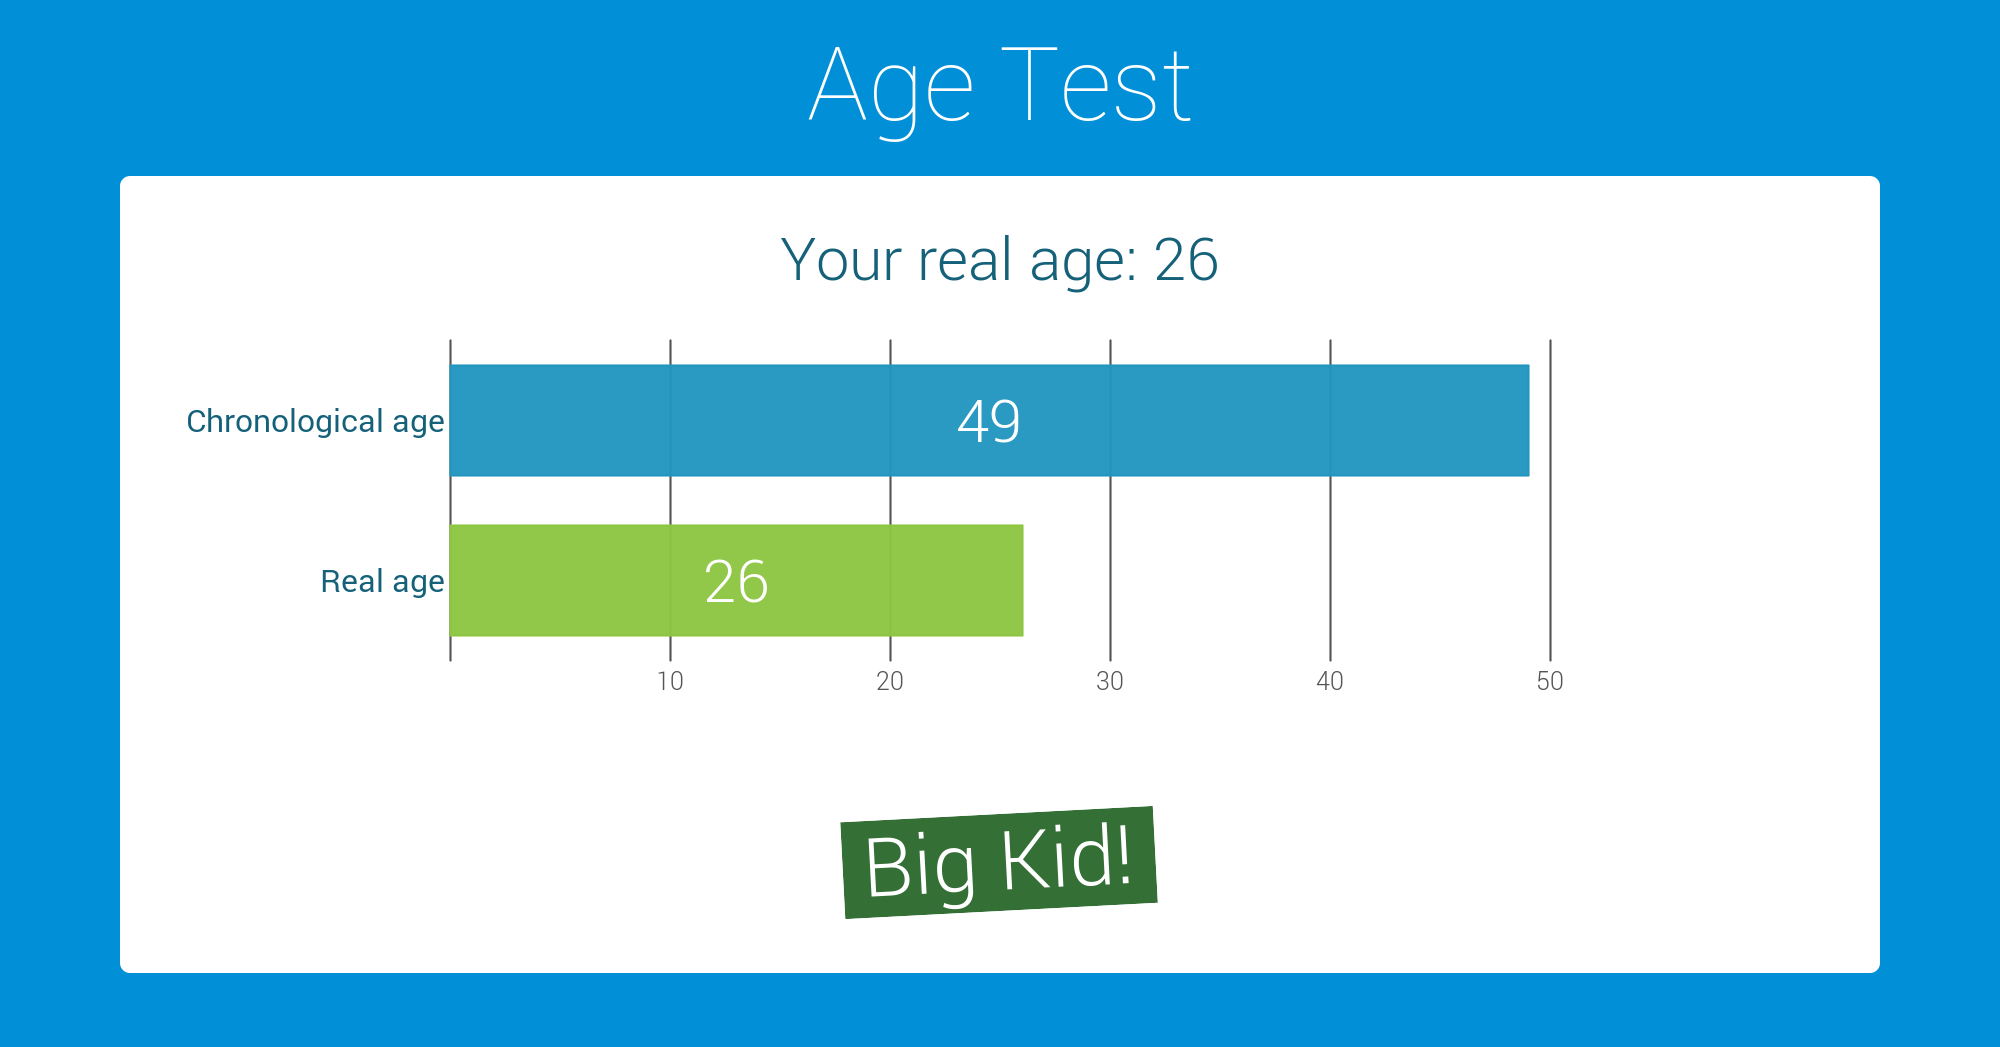 6mayz0 1 - Take the "Age Test"